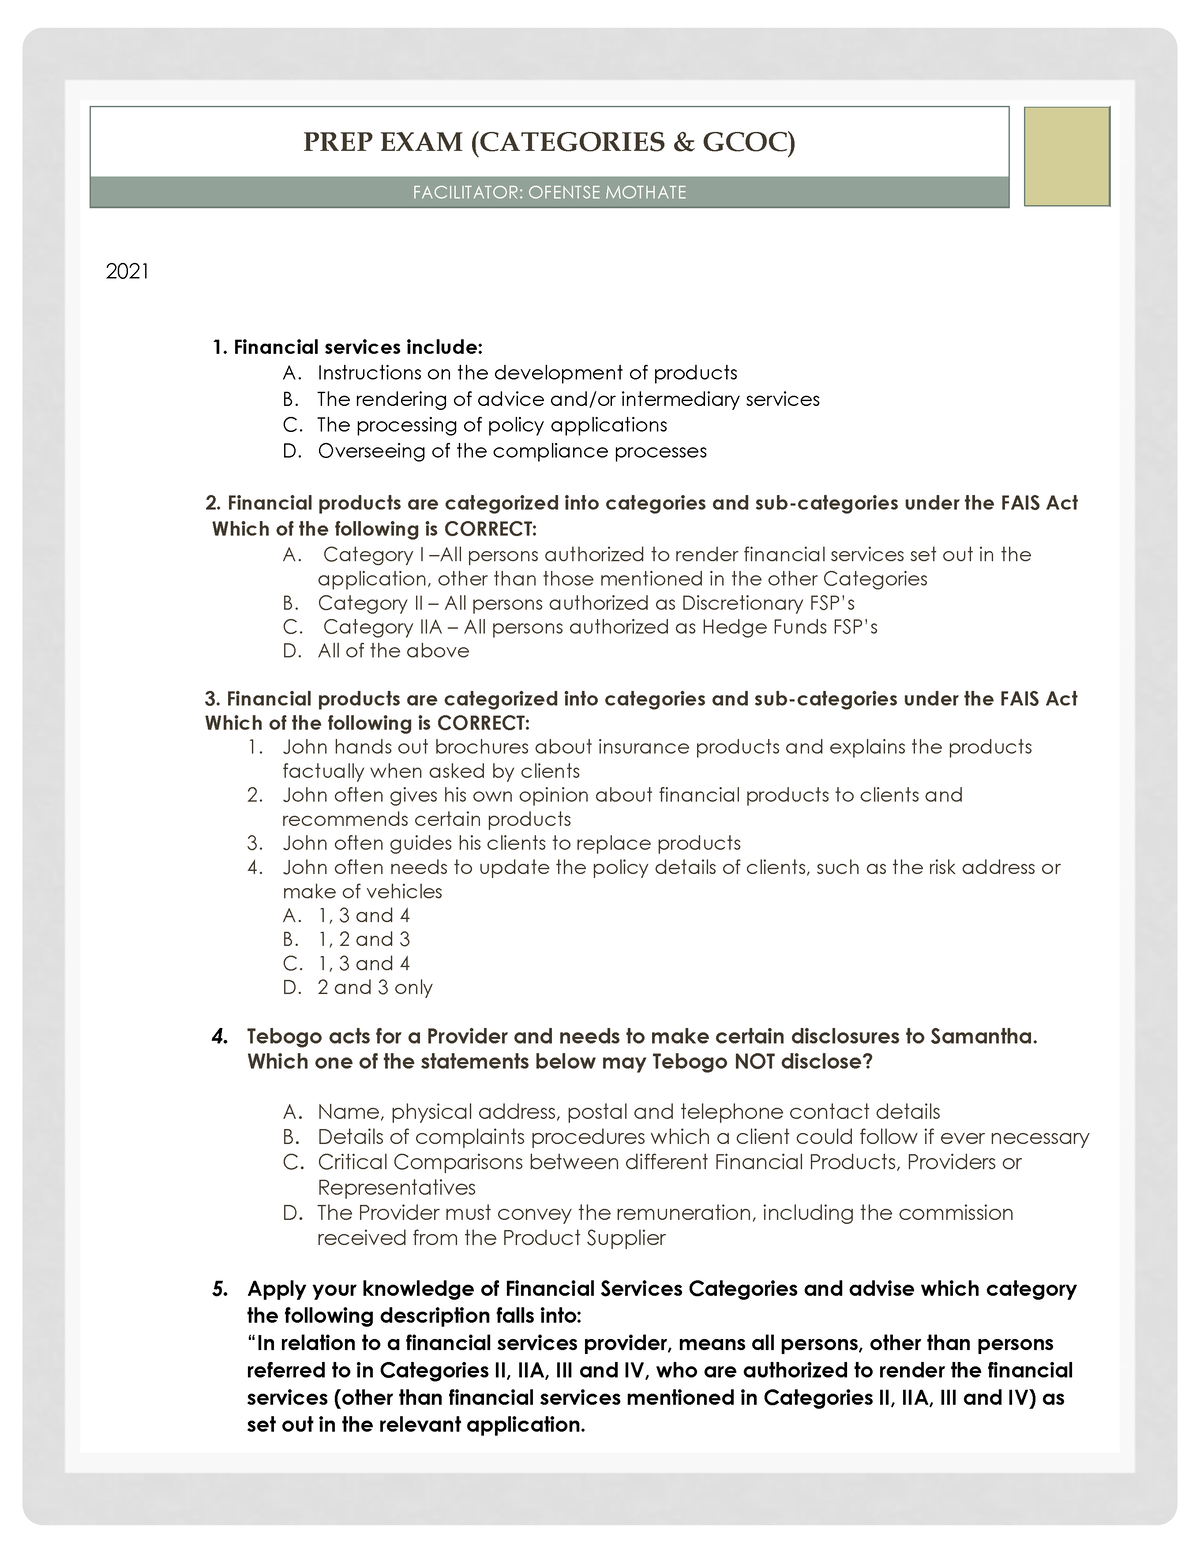 GCOC Updated exam 2021 Regulatory examination (RE5) for